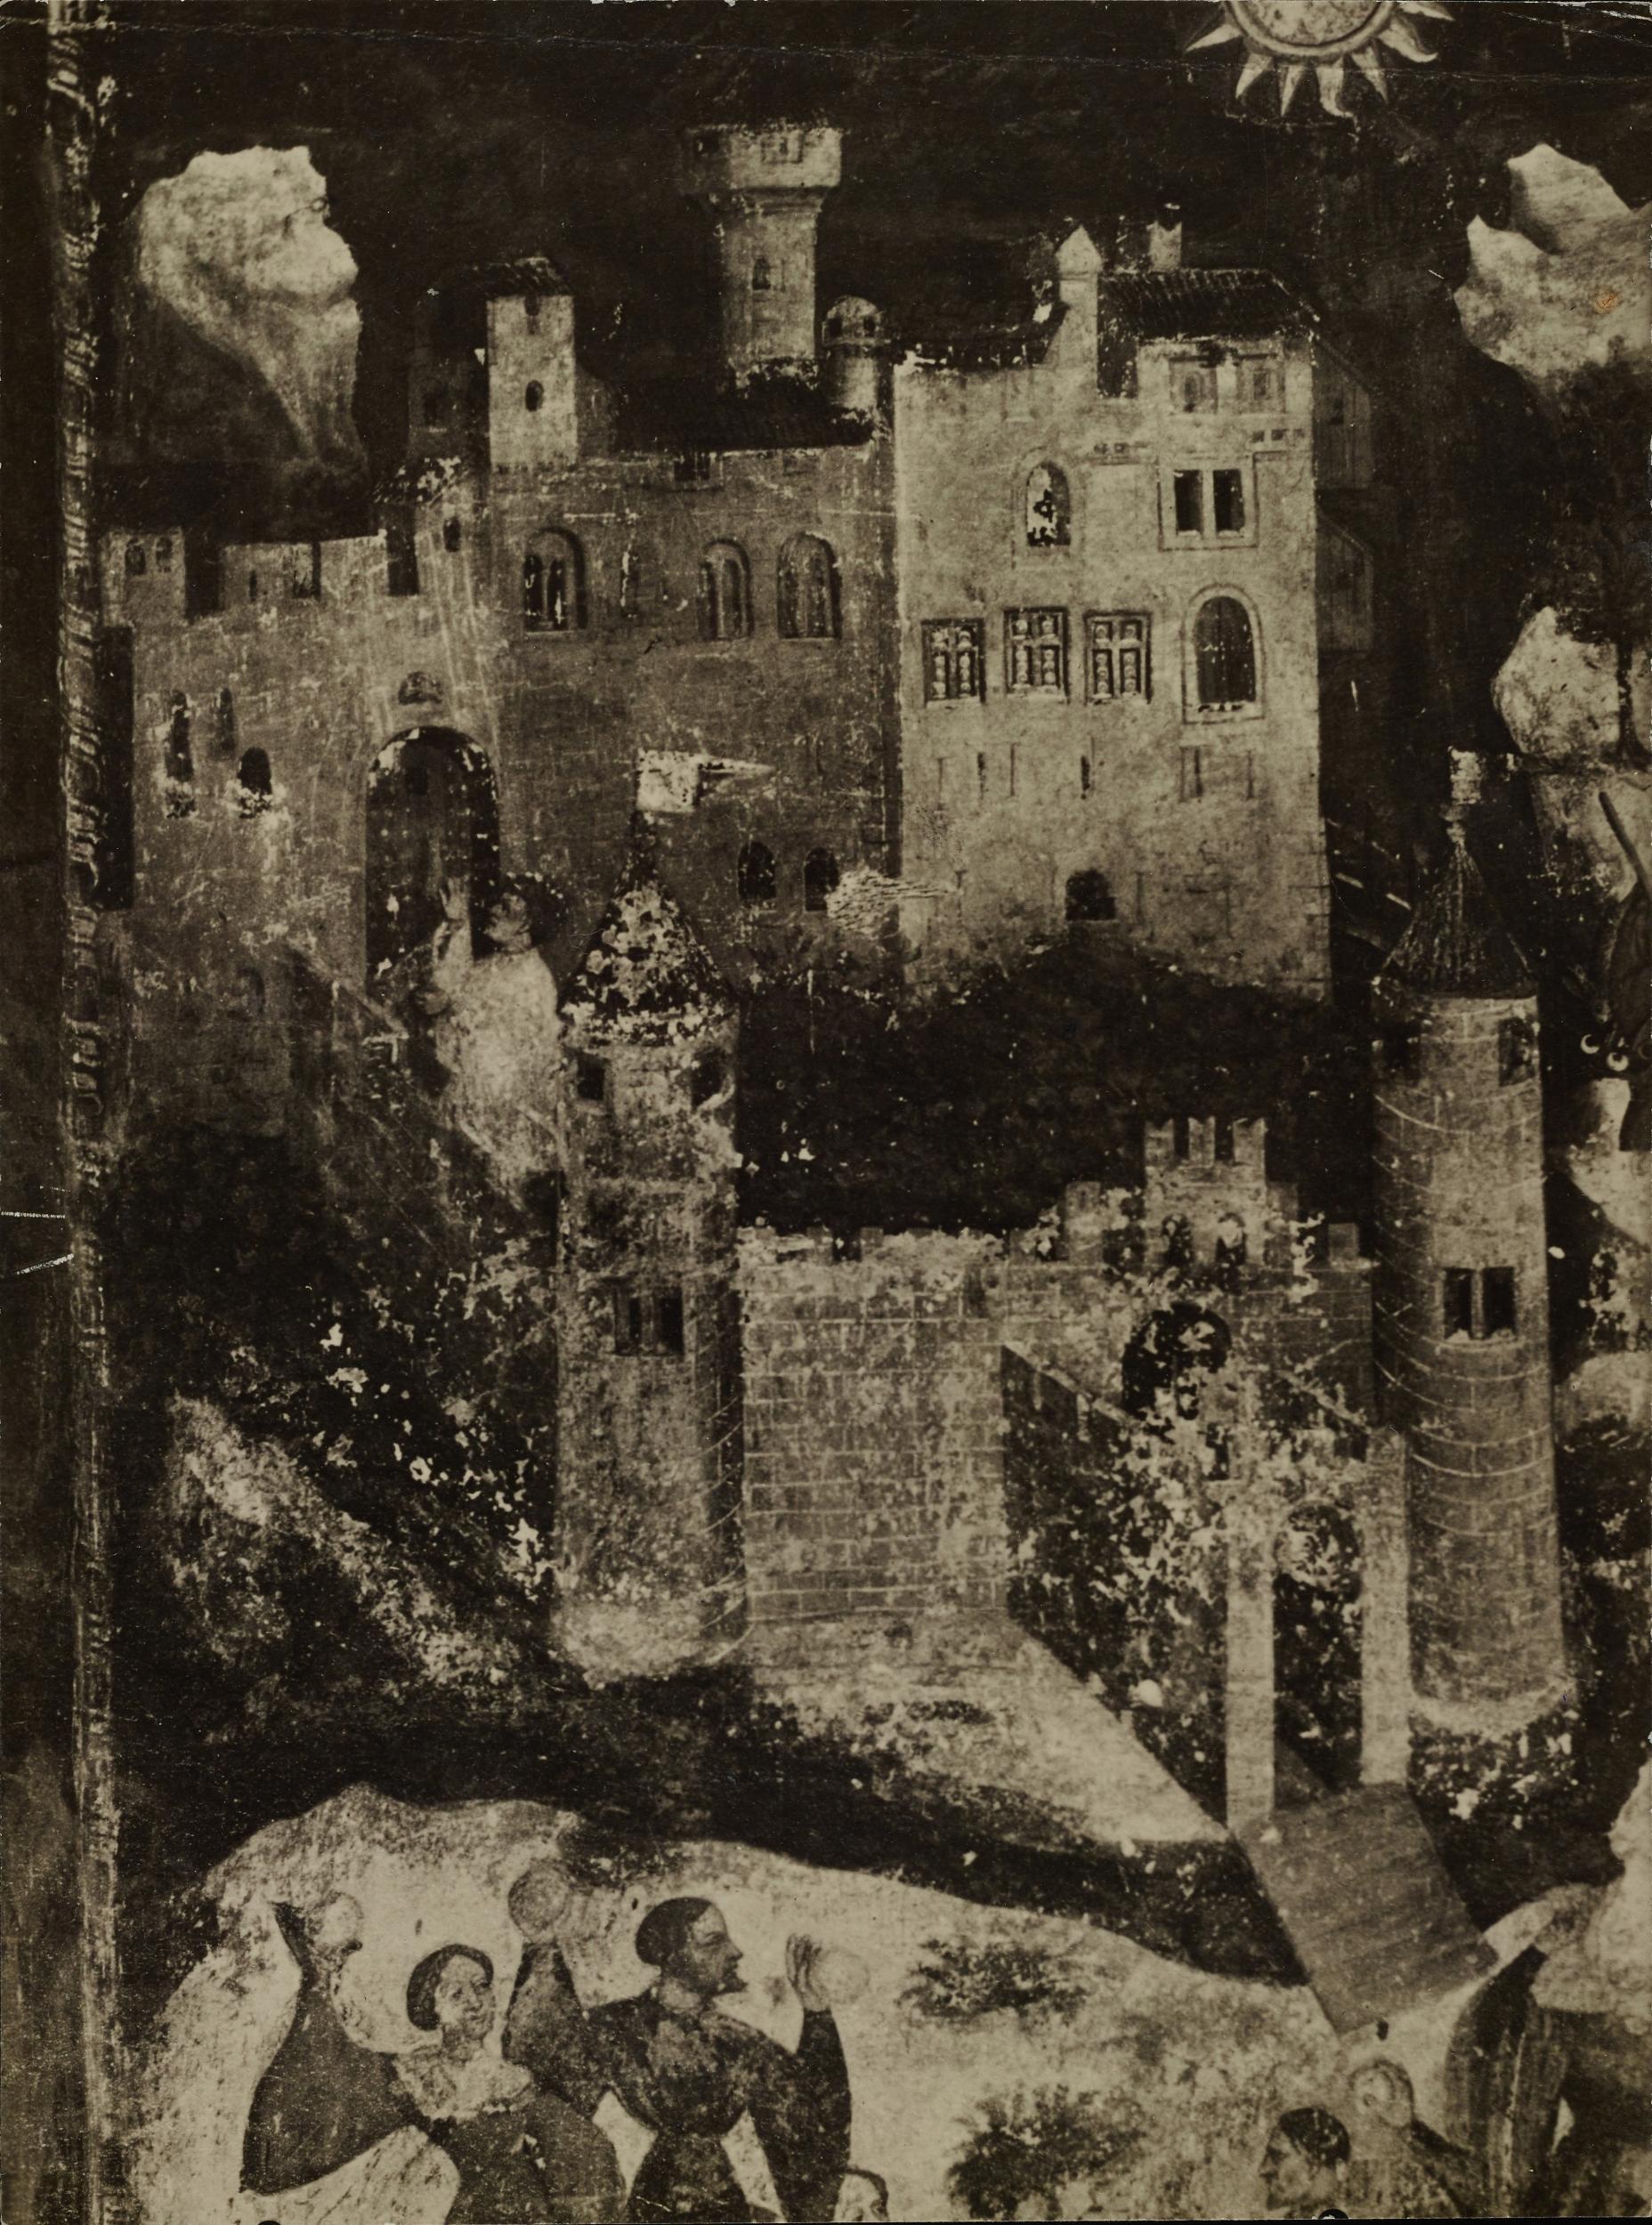 Fotografo non identificato, Trento - Castello del Buonconsiglio, Torre Aquila, Ciclo dei mesi, particolare, Gennaio, MPI6120336